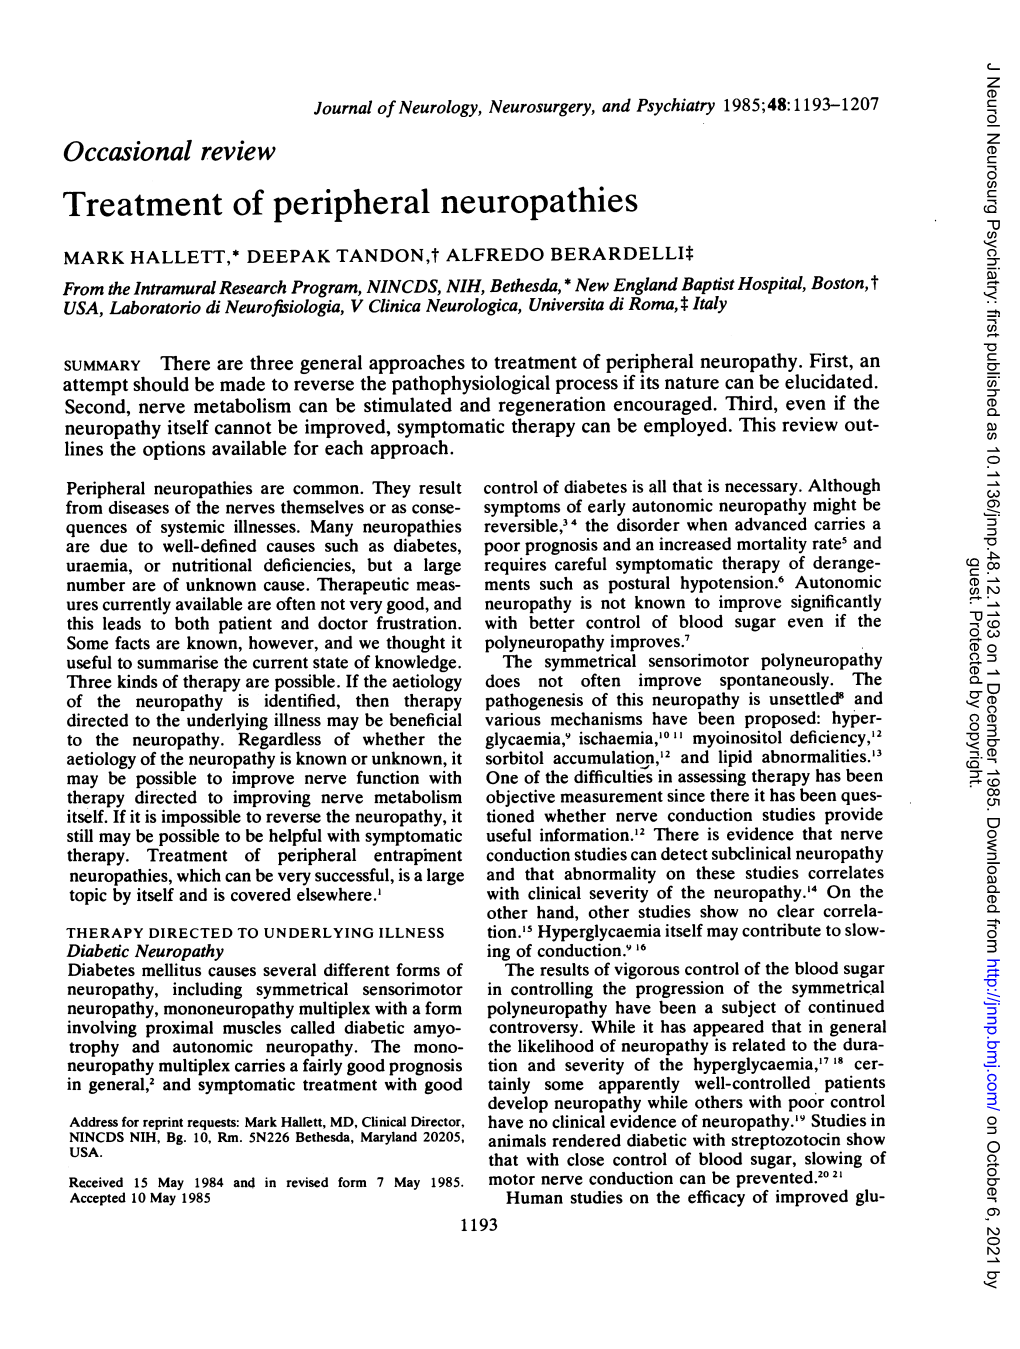 Treatment of Peripheral Neuropathies